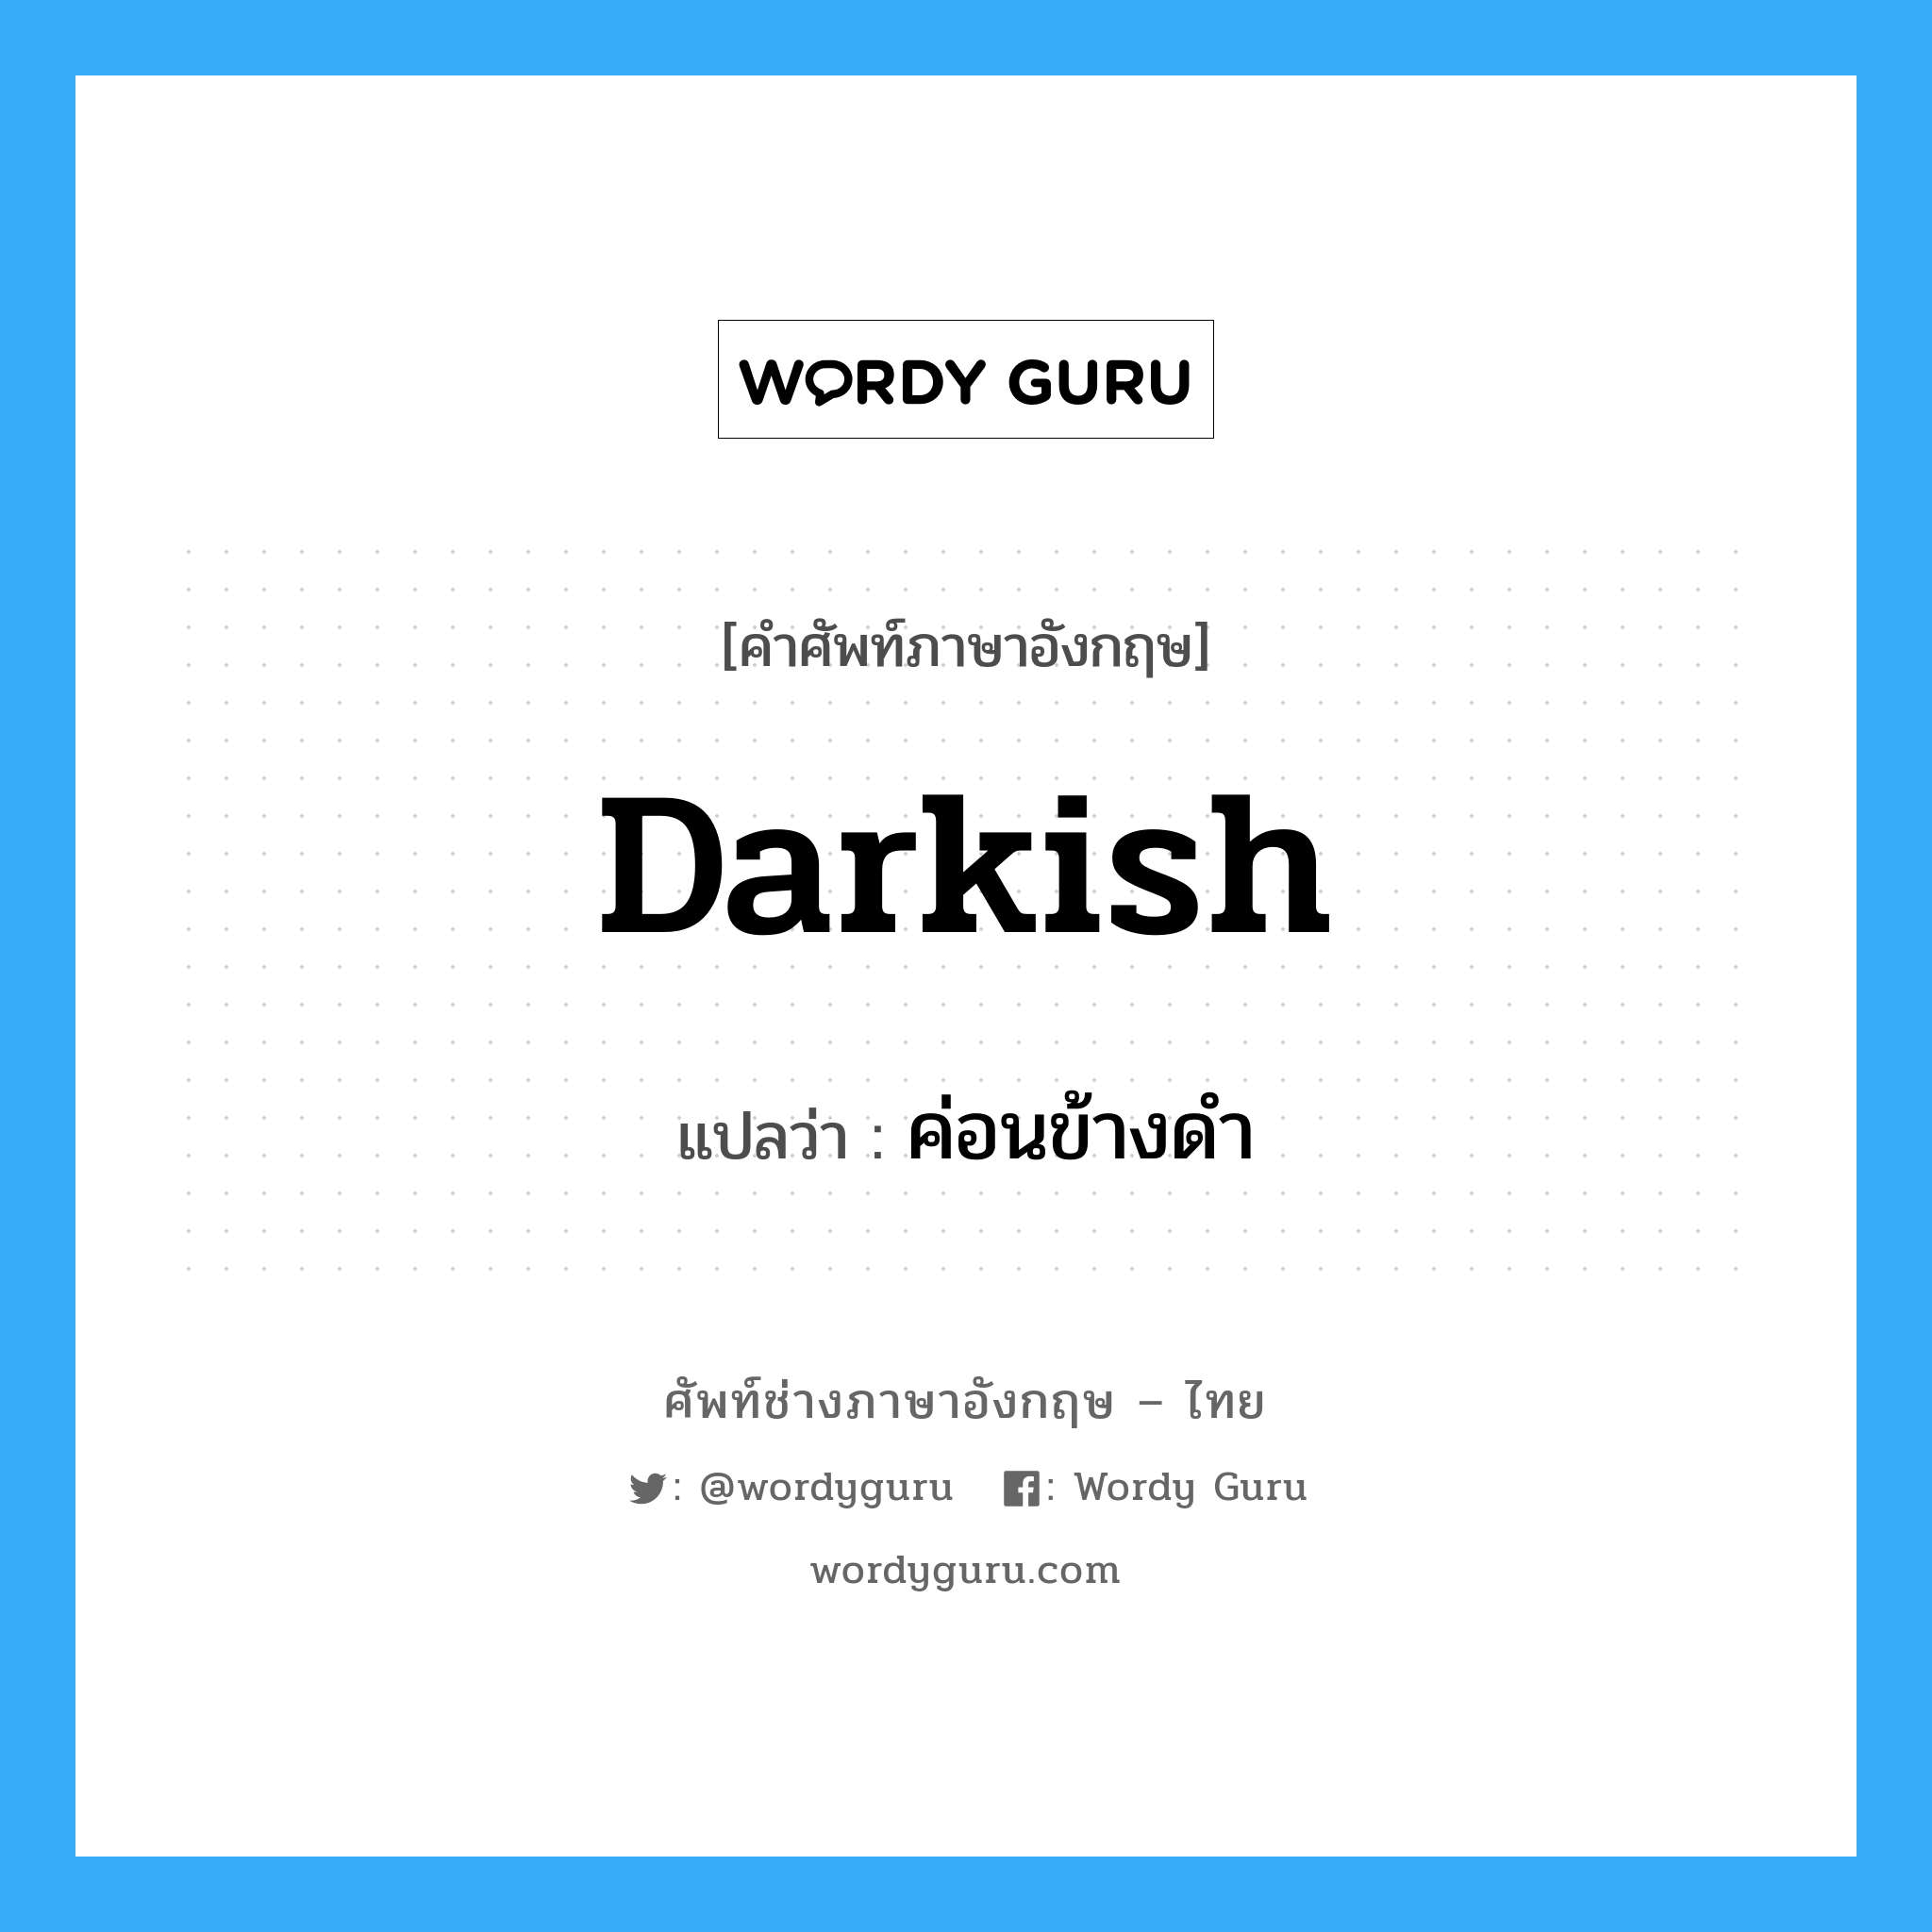 darkish แปลว่า?, คำศัพท์ช่างภาษาอังกฤษ - ไทย darkish คำศัพท์ภาษาอังกฤษ darkish แปลว่า ค่อนข้างดำ